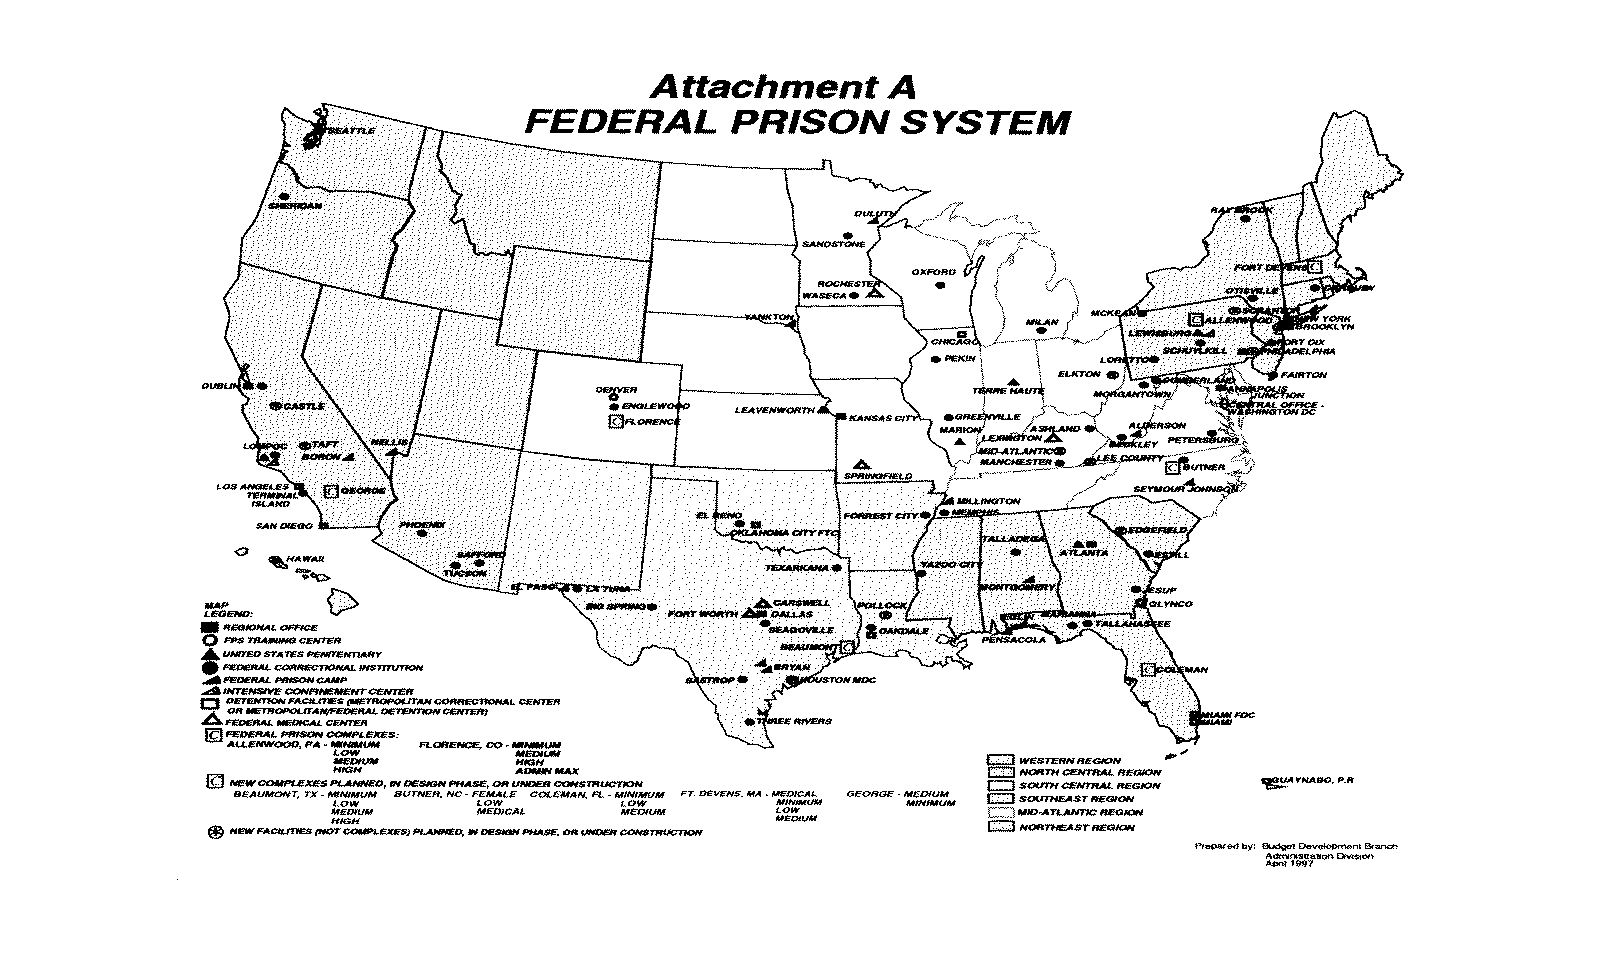 Attachment A - Federal Prison System